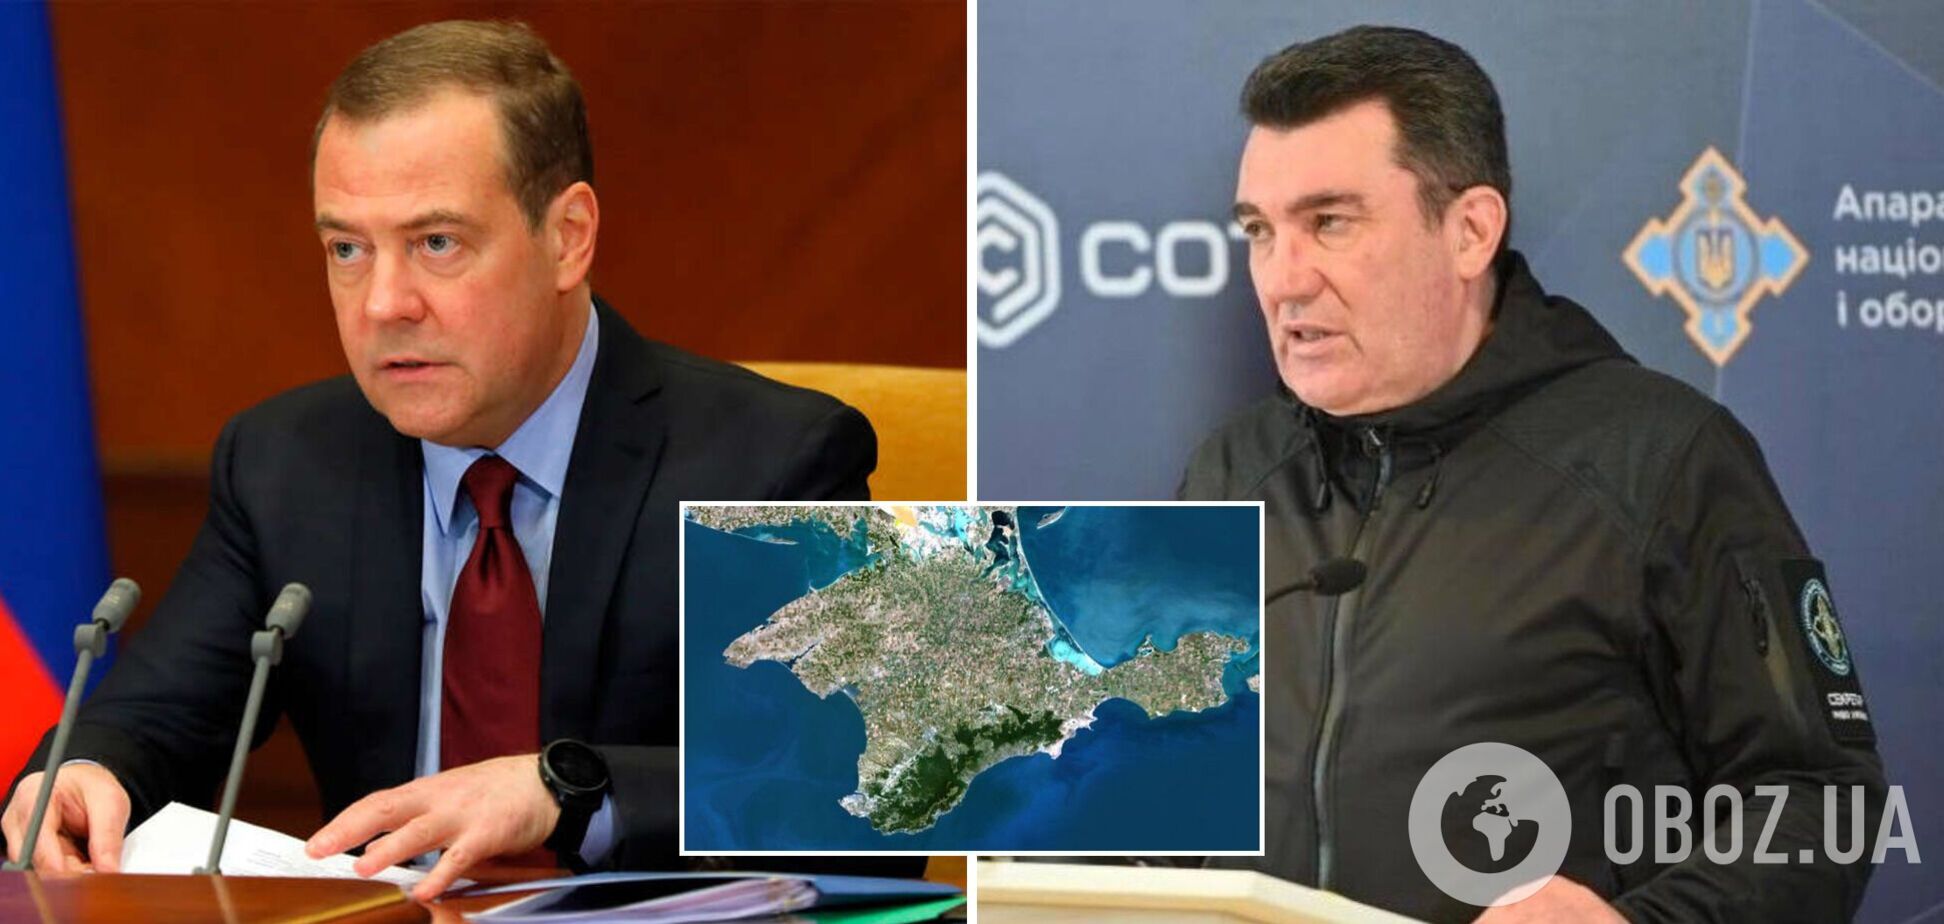 Данилов прокомментировал заявление Медведева о Крыме